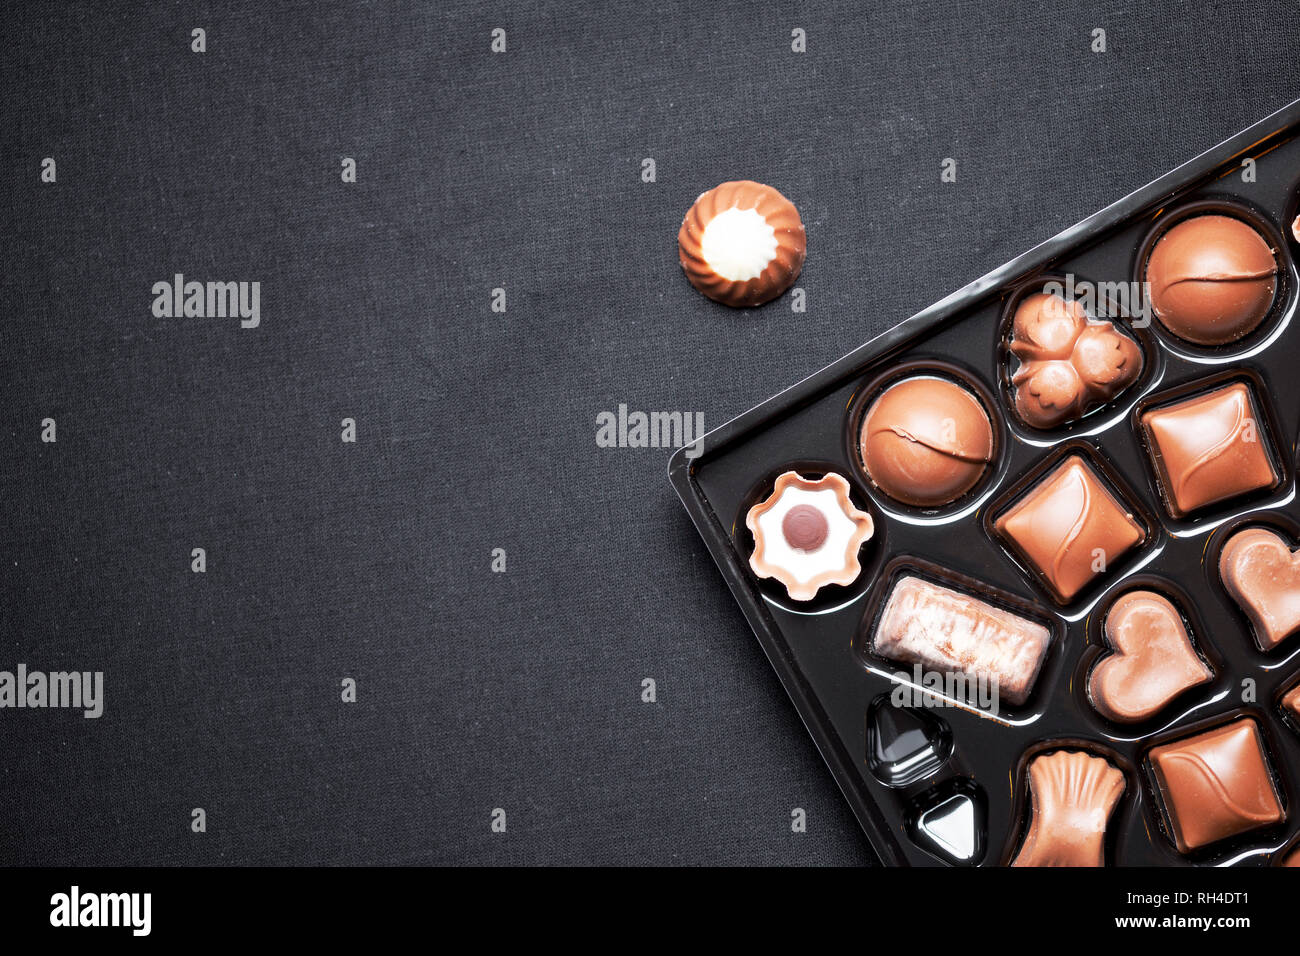 Vue rapprochée d'une boîte de chocolats pralinés, chocolats divers avec vue de dessus sur fond blavk Banque D'Images